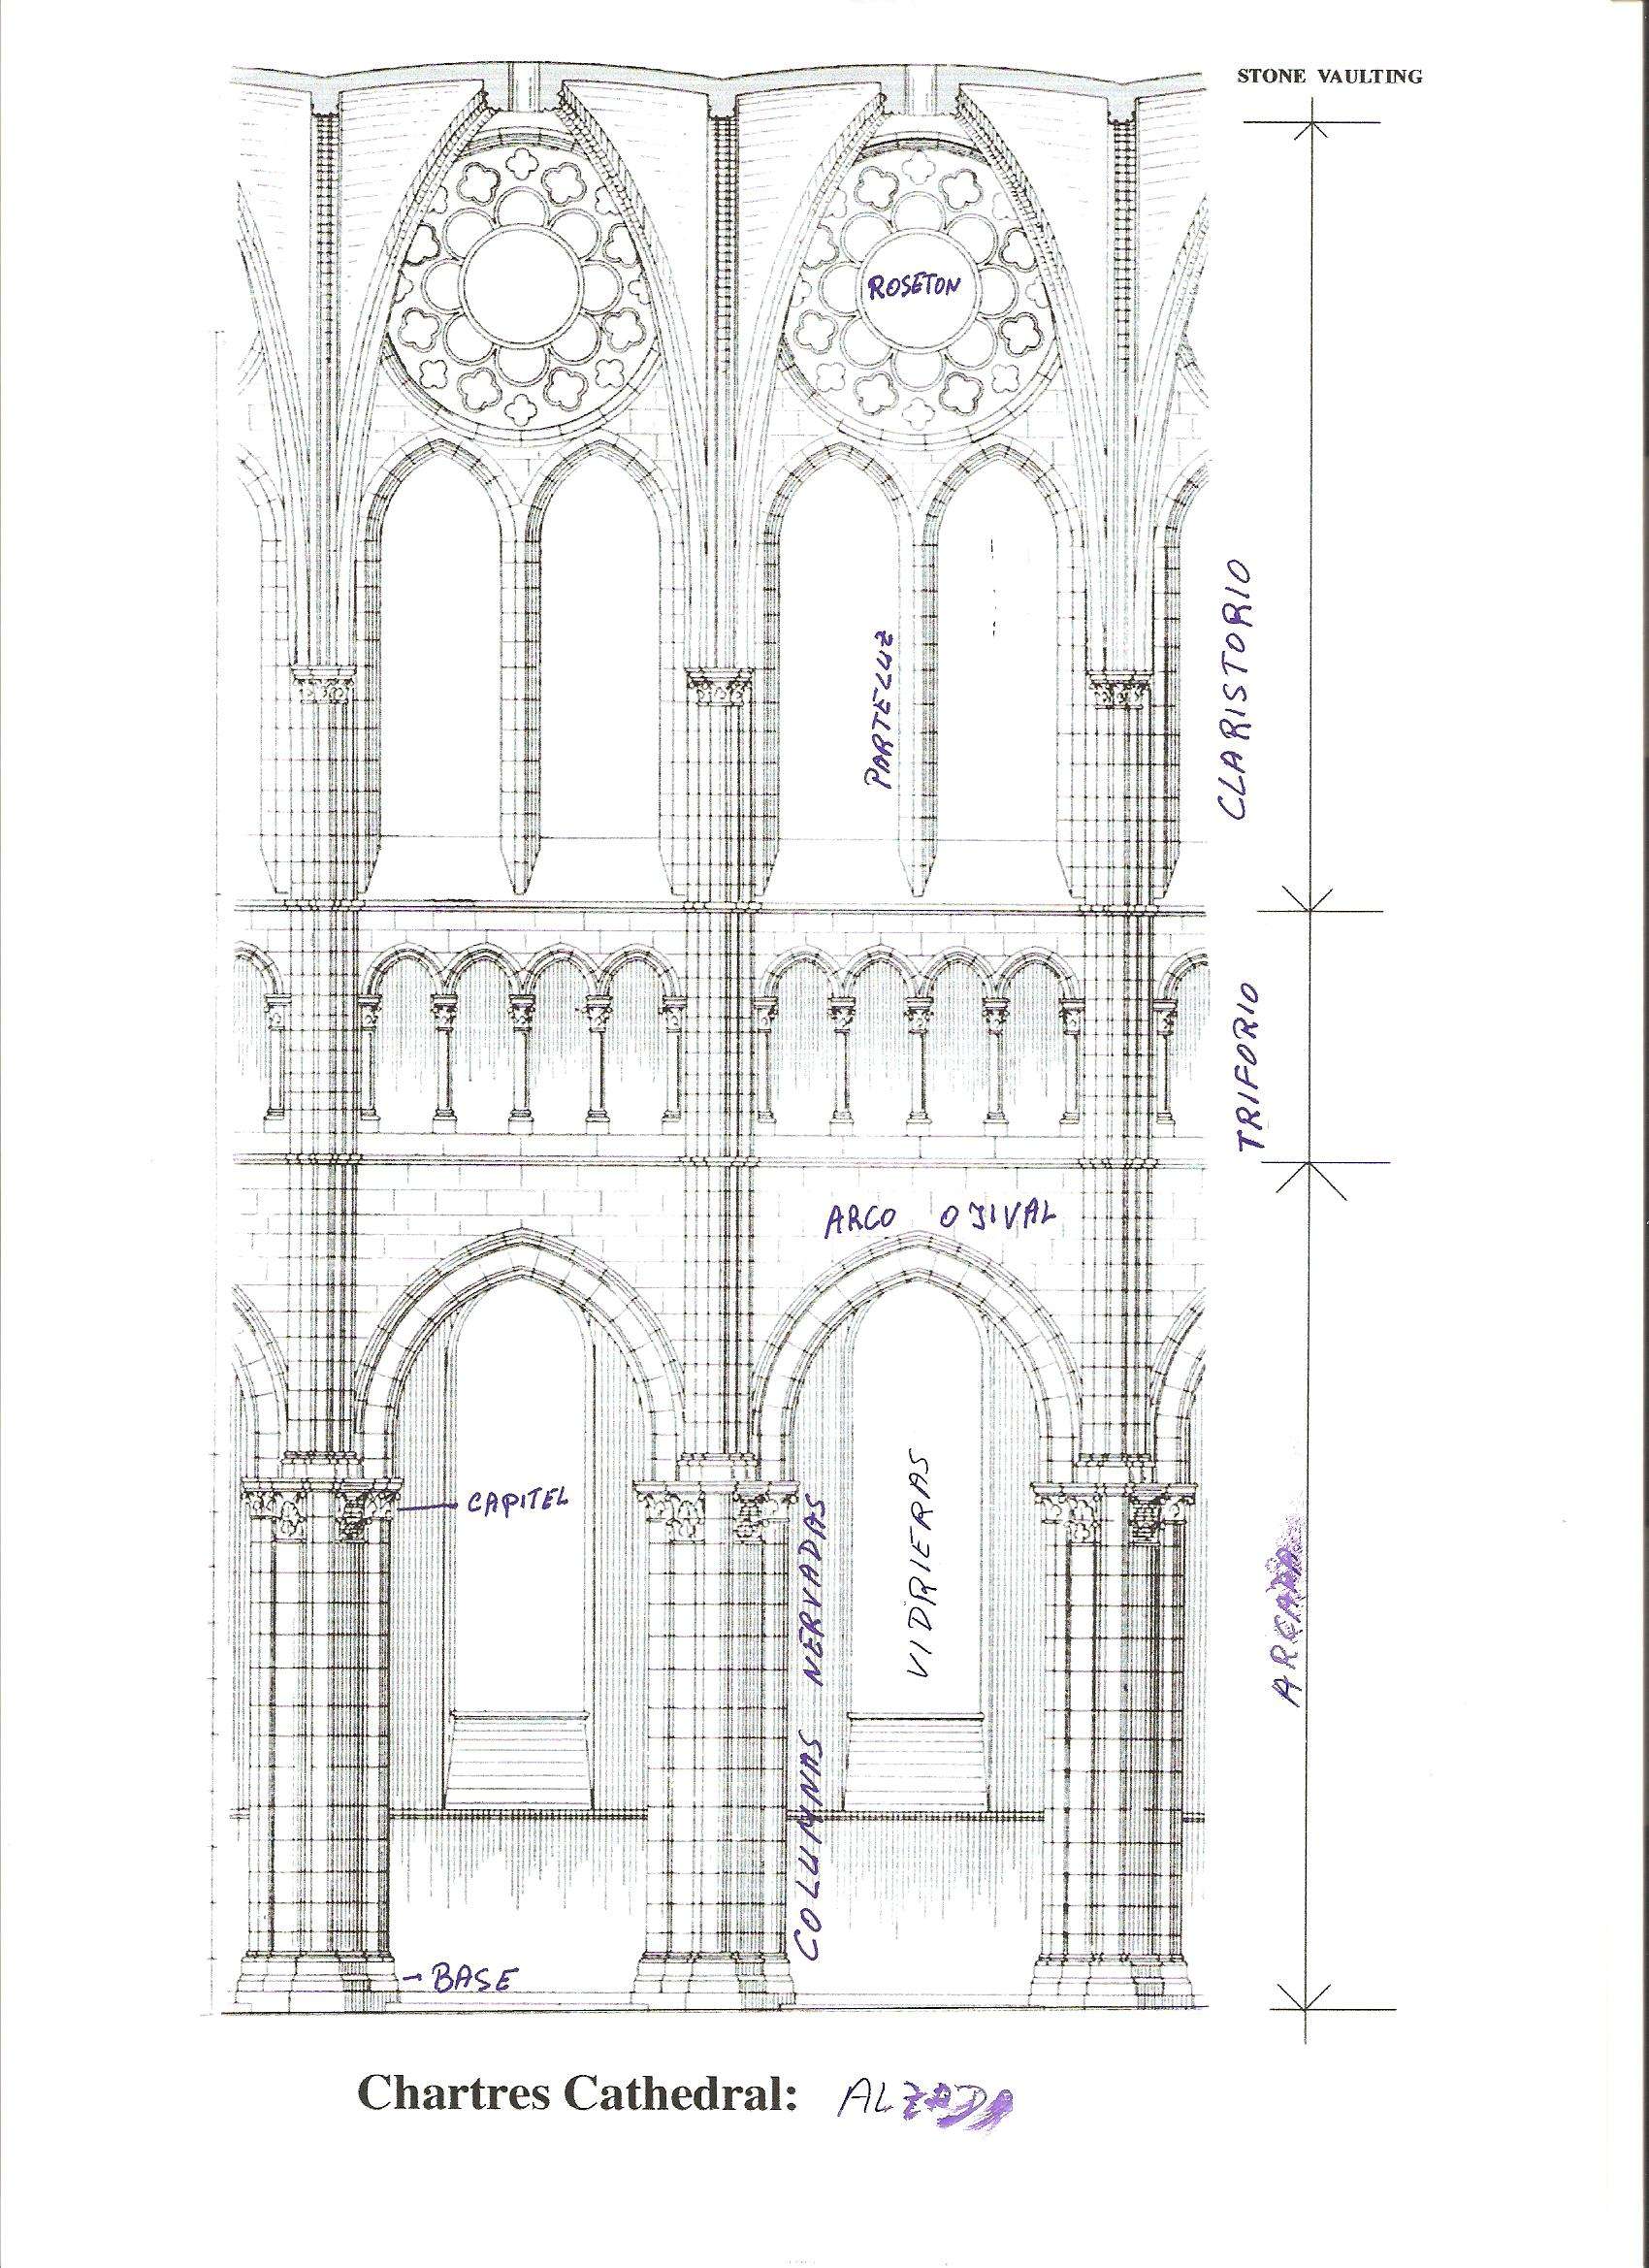 Arquitectura de la catedral de Chartres - Chartres: Arte, espiritualidad y esoterismo. (2)